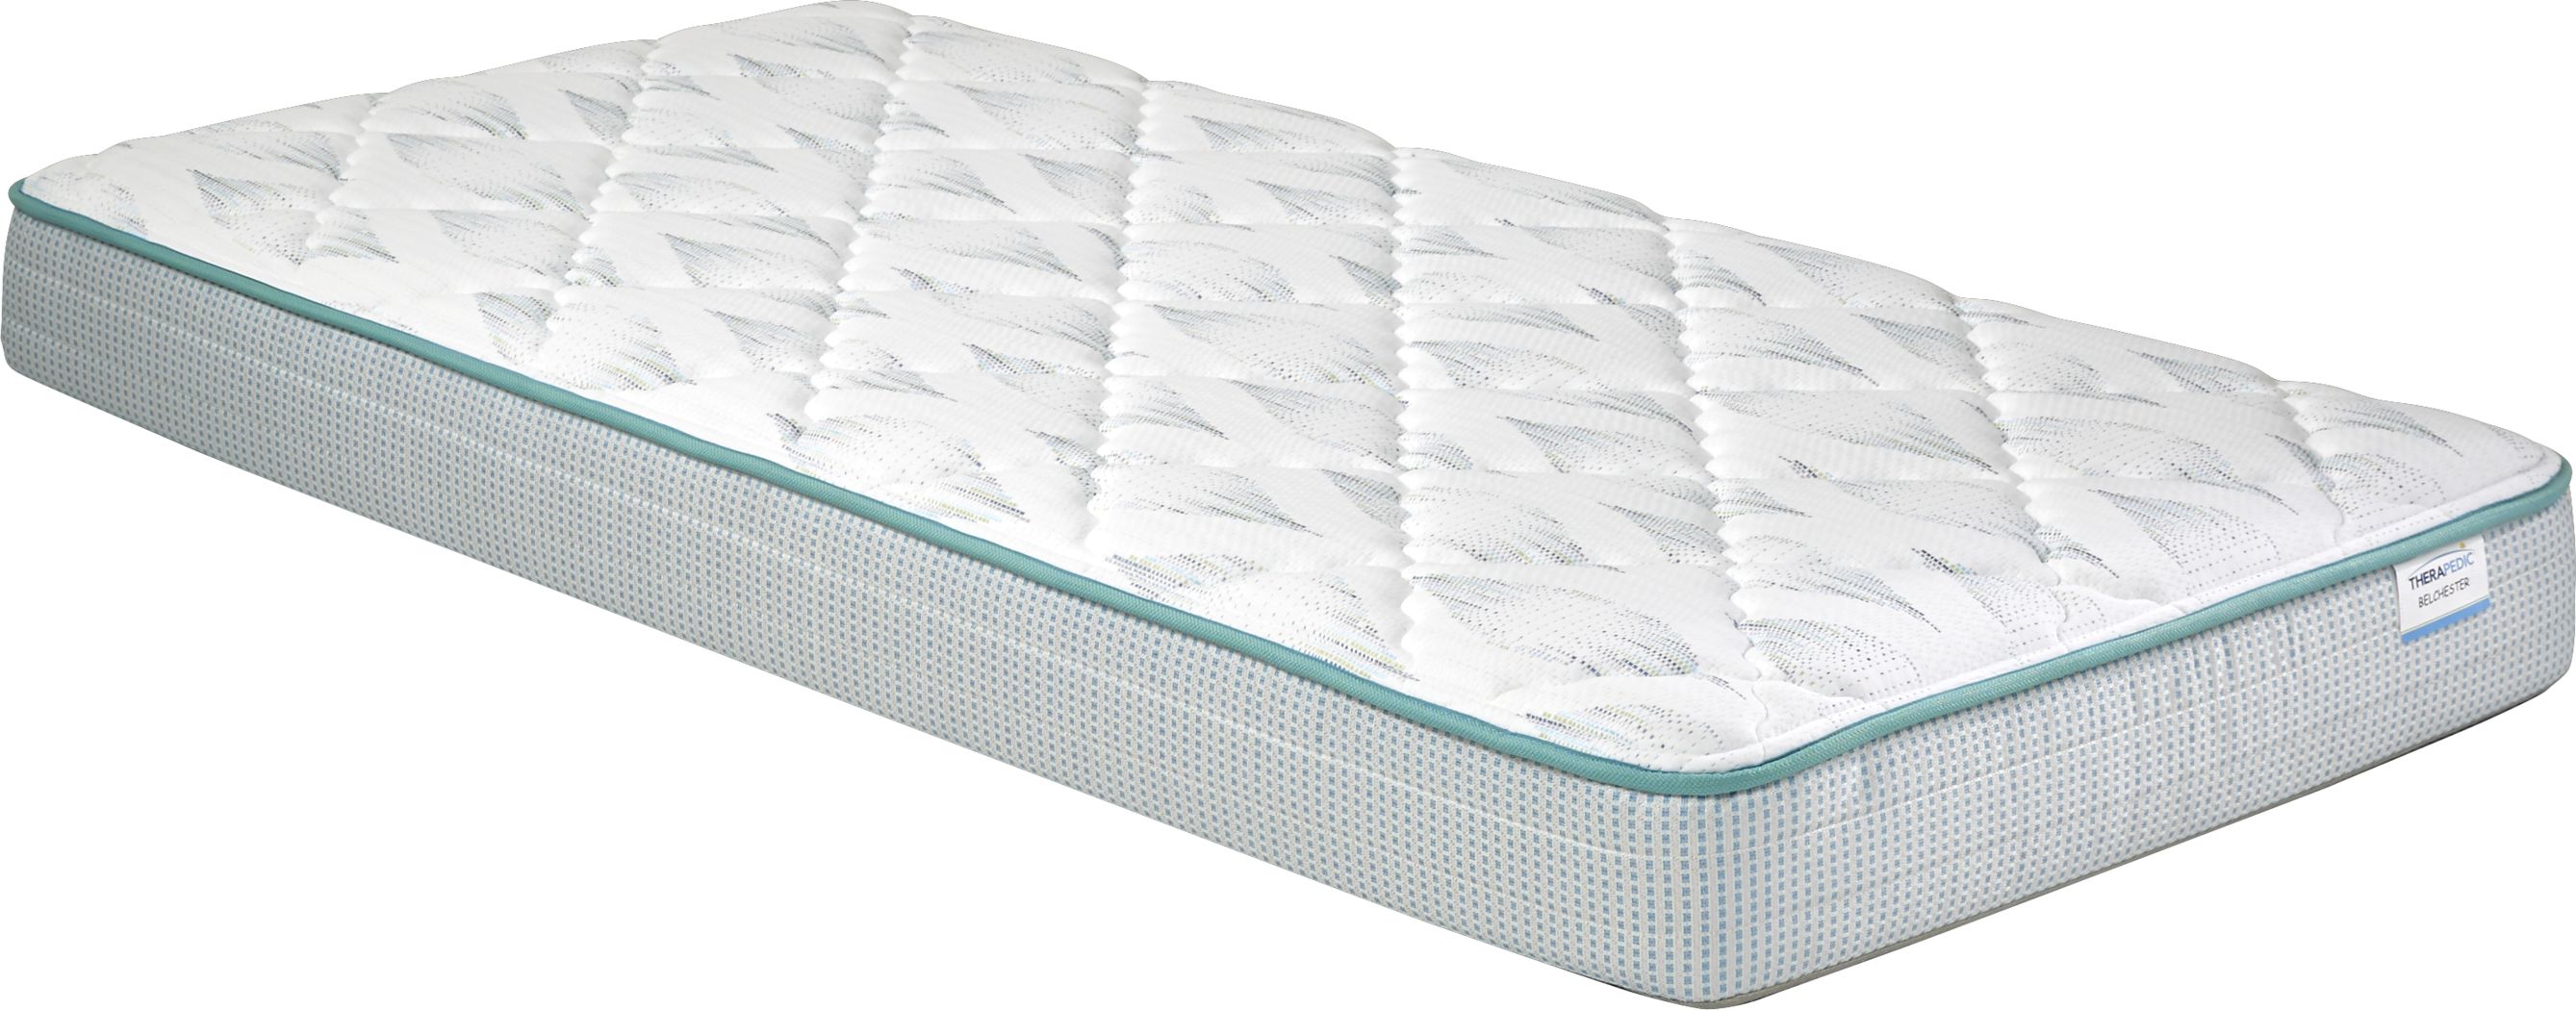 therapedic beckler firm twin mattress